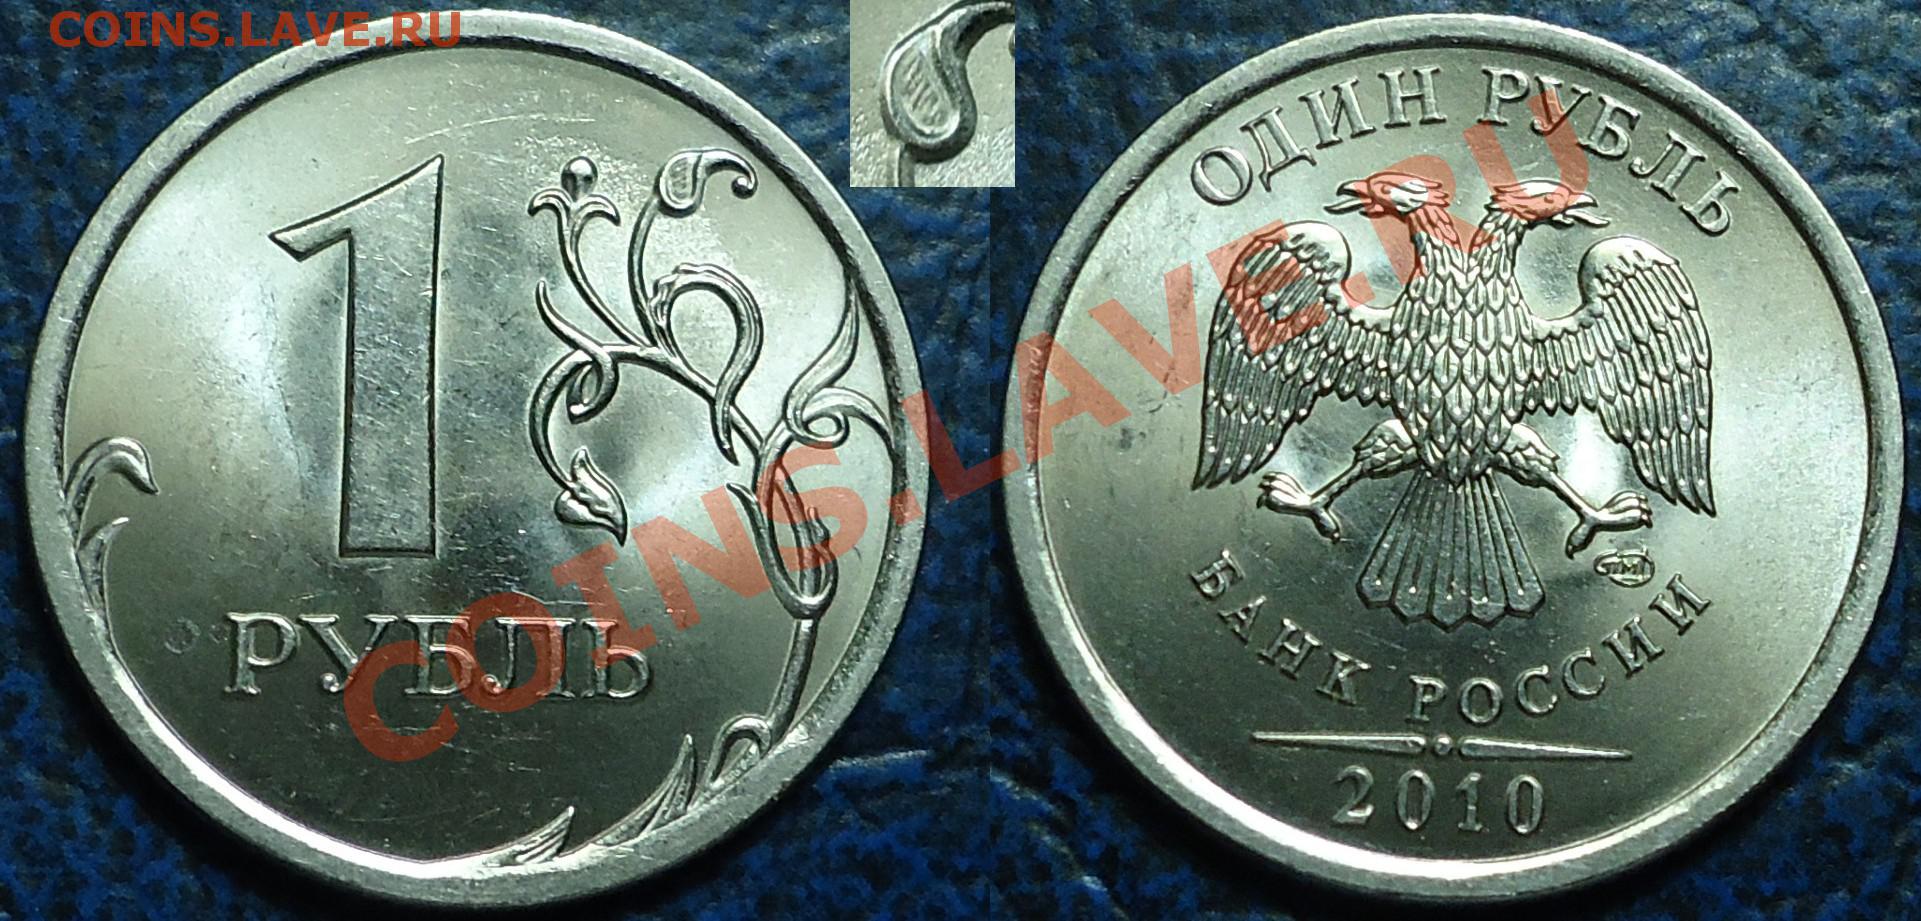 Рубль в 2010. 1 Рубль 2010 СПМД. 1 Рубль 2005 СПМД штемпель б. Серебряные 1 рубль 2010. Штемпель 3.21 на монете 1 рубль 2010 года.